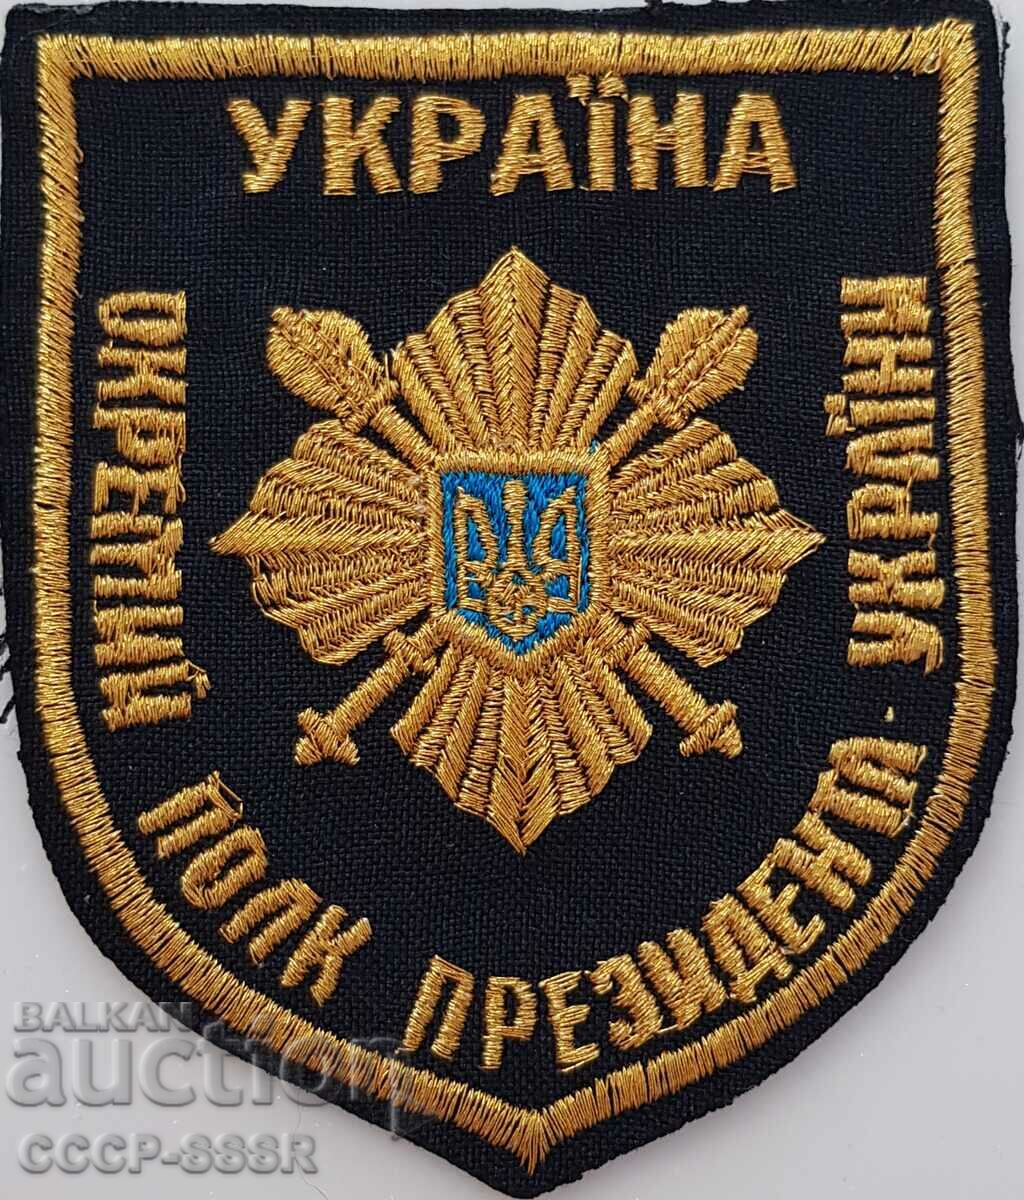 Ουκρανία, chevron, ομοιόμορφο μπάλωμα, Προεδρικό Σύνταγμα